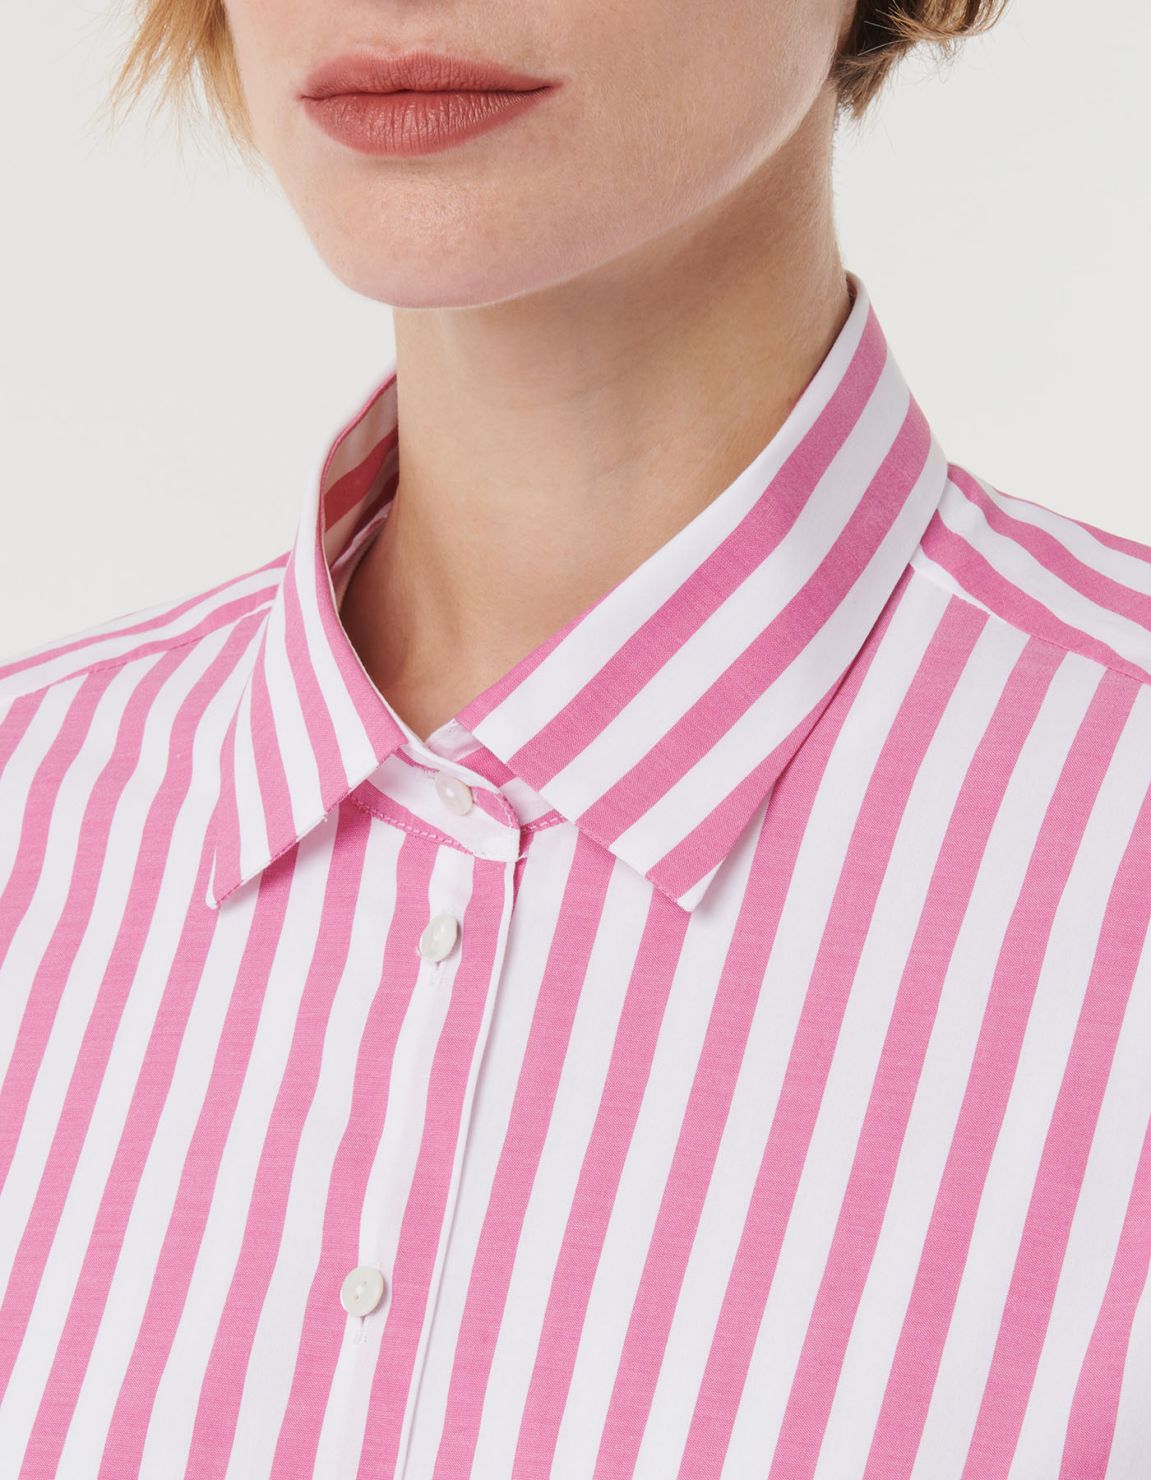 Shirt Dark Pink Cotton Stripe Over 2